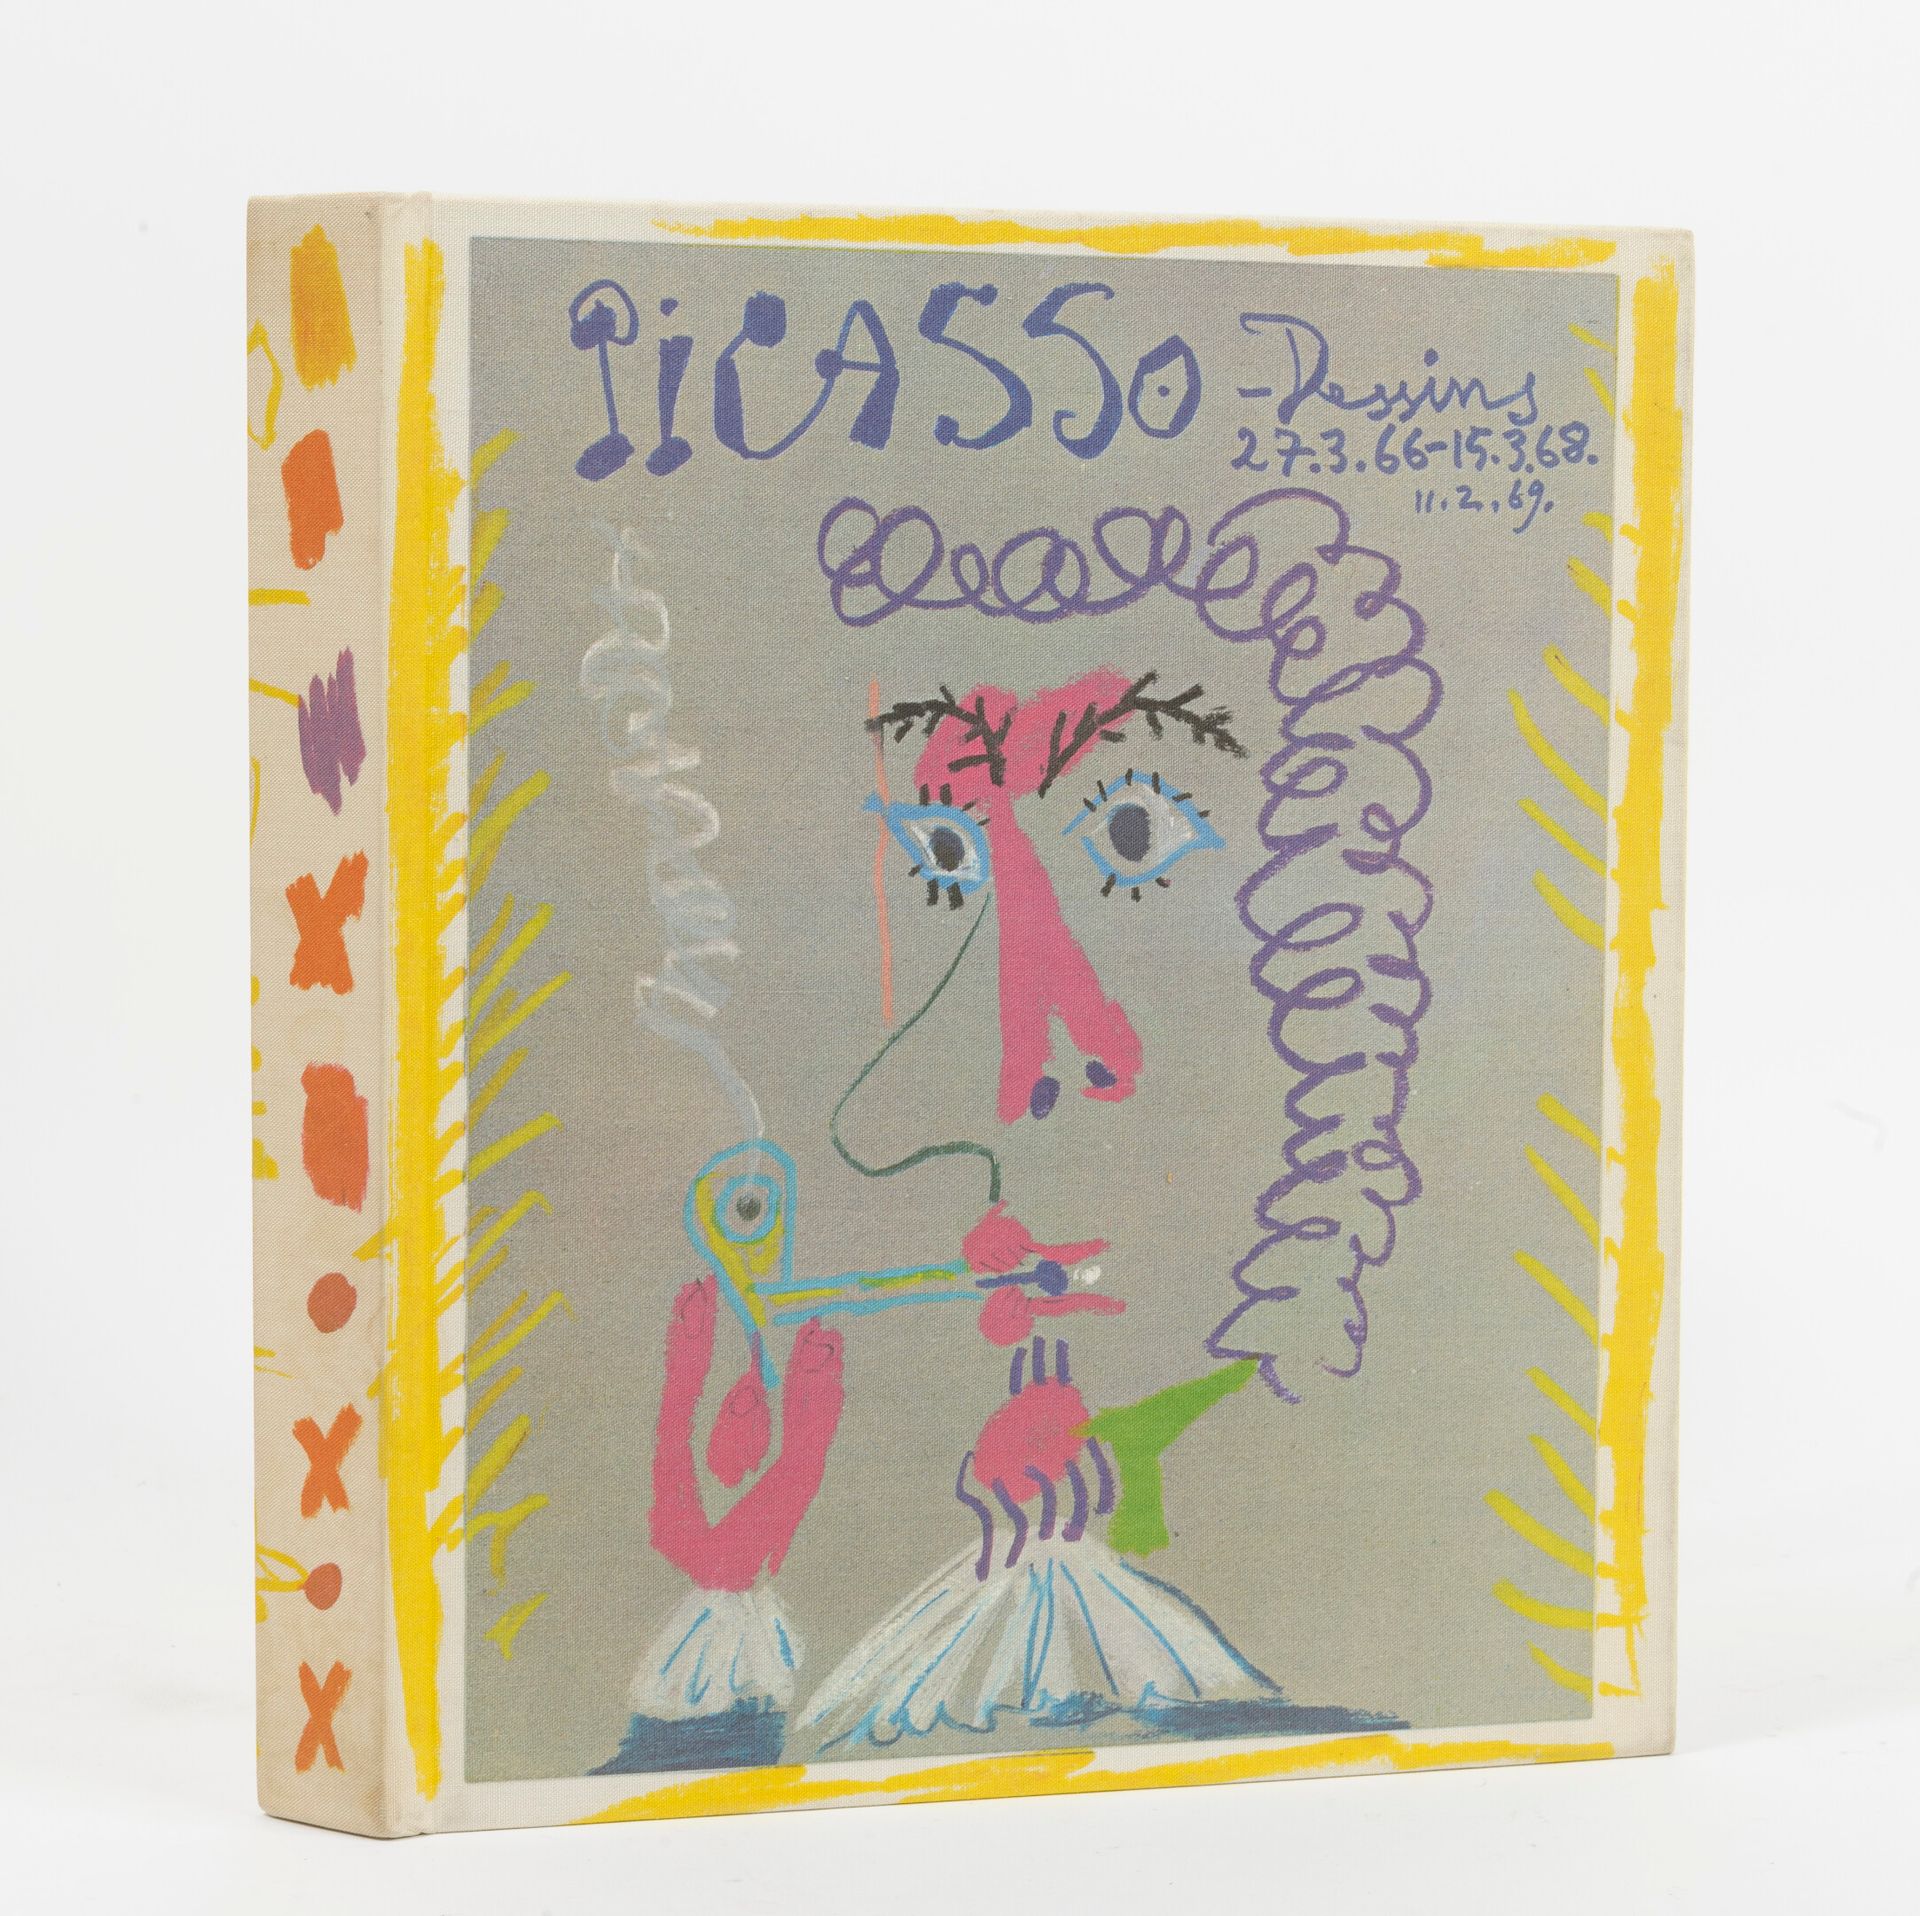 FELD, Charles Picasso, Die Zeichnungen vom 27.3.66 bis 15.3.68. 

Vorwort von Re&hellip;